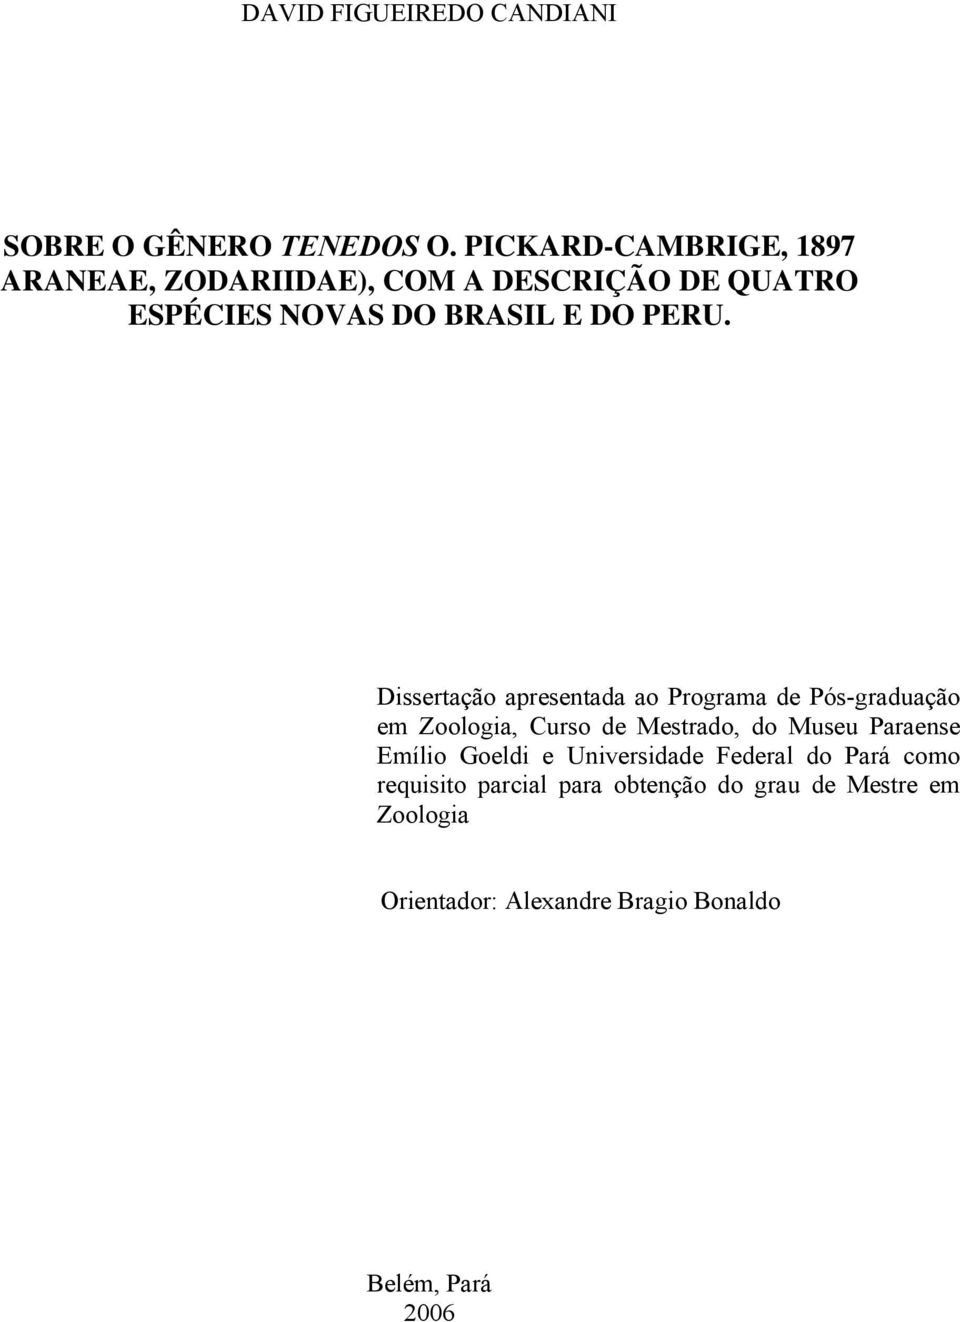 Dissertação apresentada ao Programa de Pós-graduação em Zoologia, Curso de Mestrado, do Museu Paraense